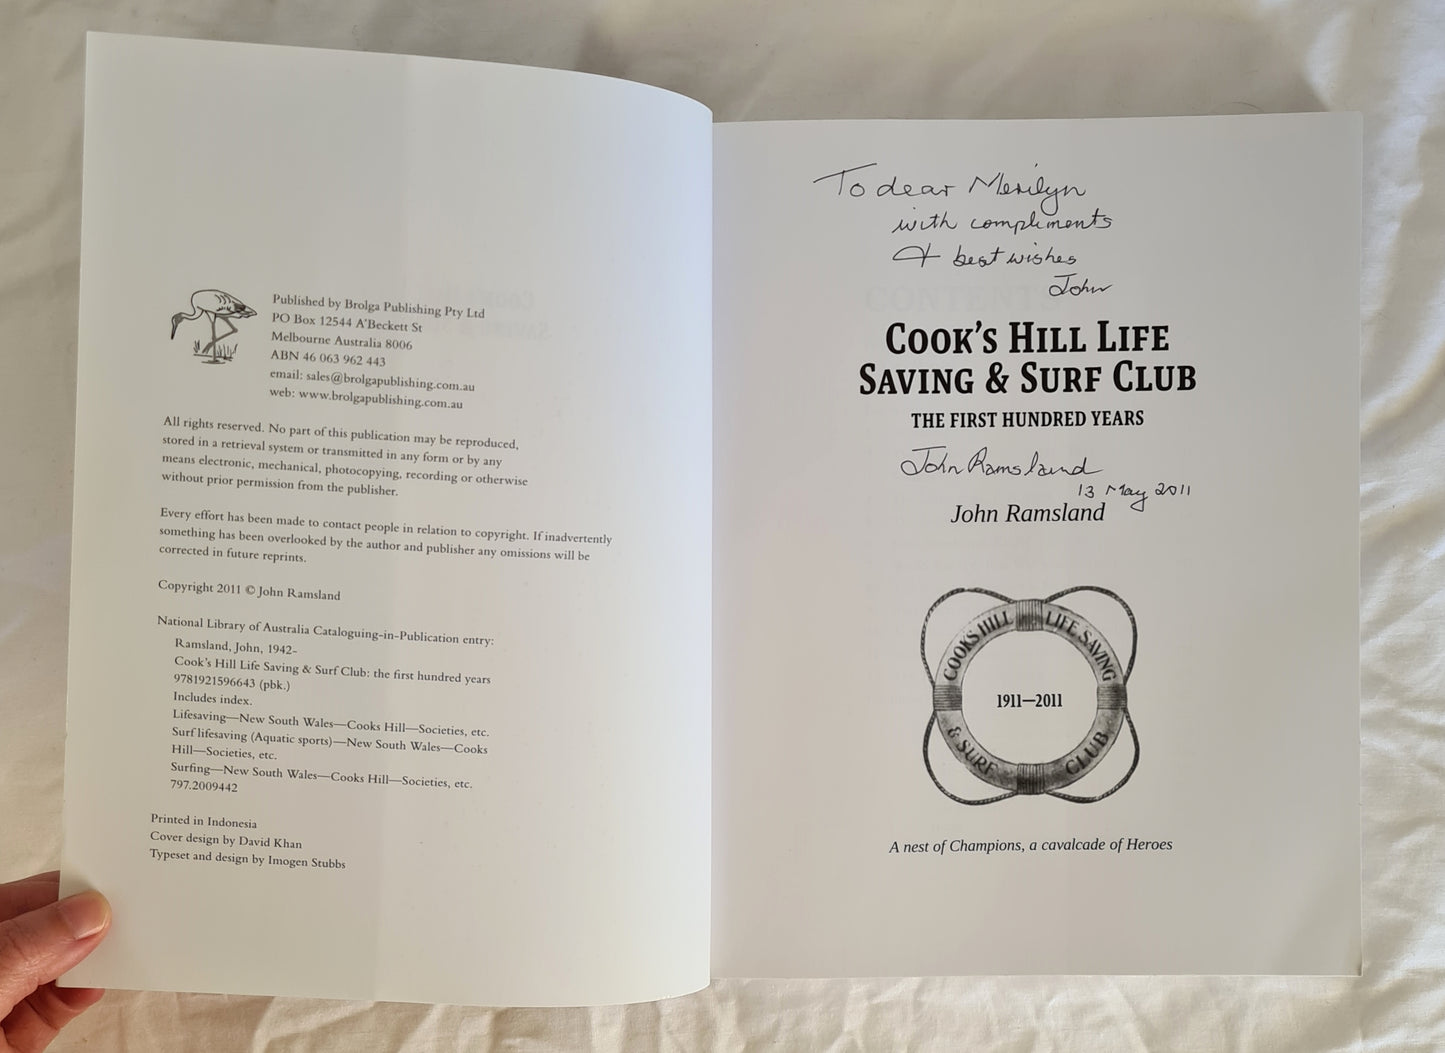 Cook’s Hill Life Saving & Surf Club by John Ramsland